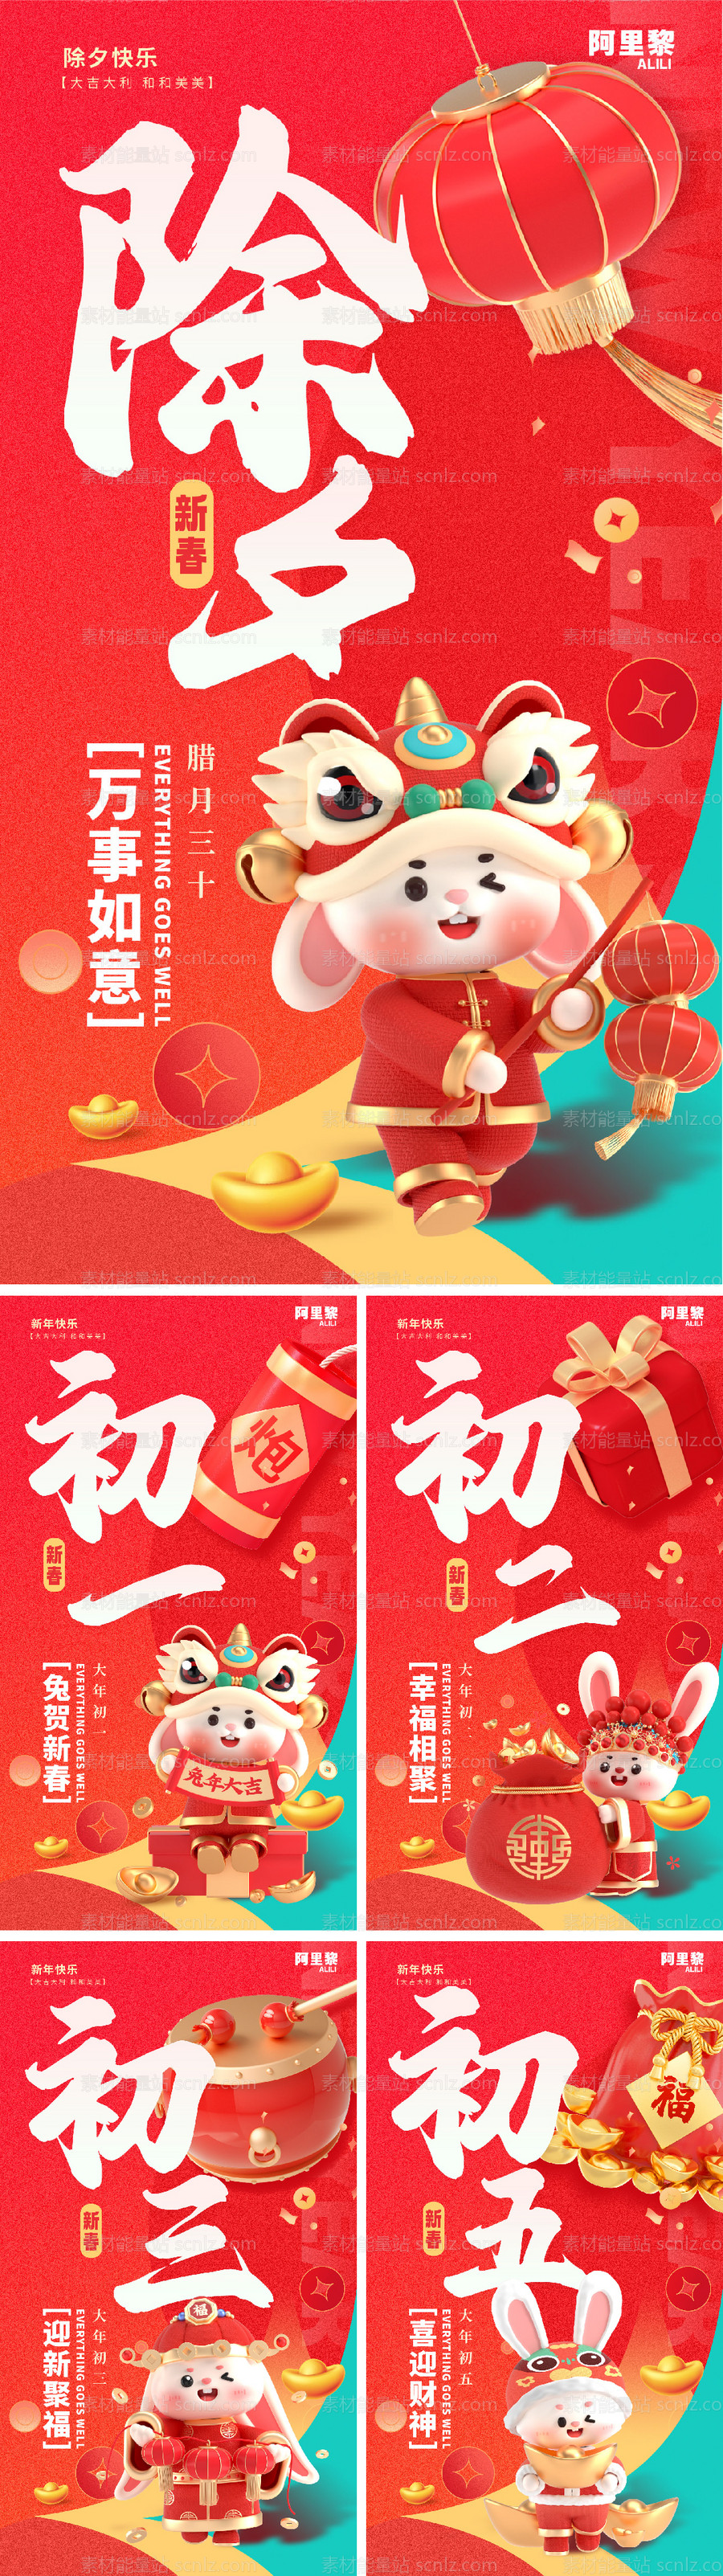 素材能量站-春节兔年新年跨年除夕系列海报